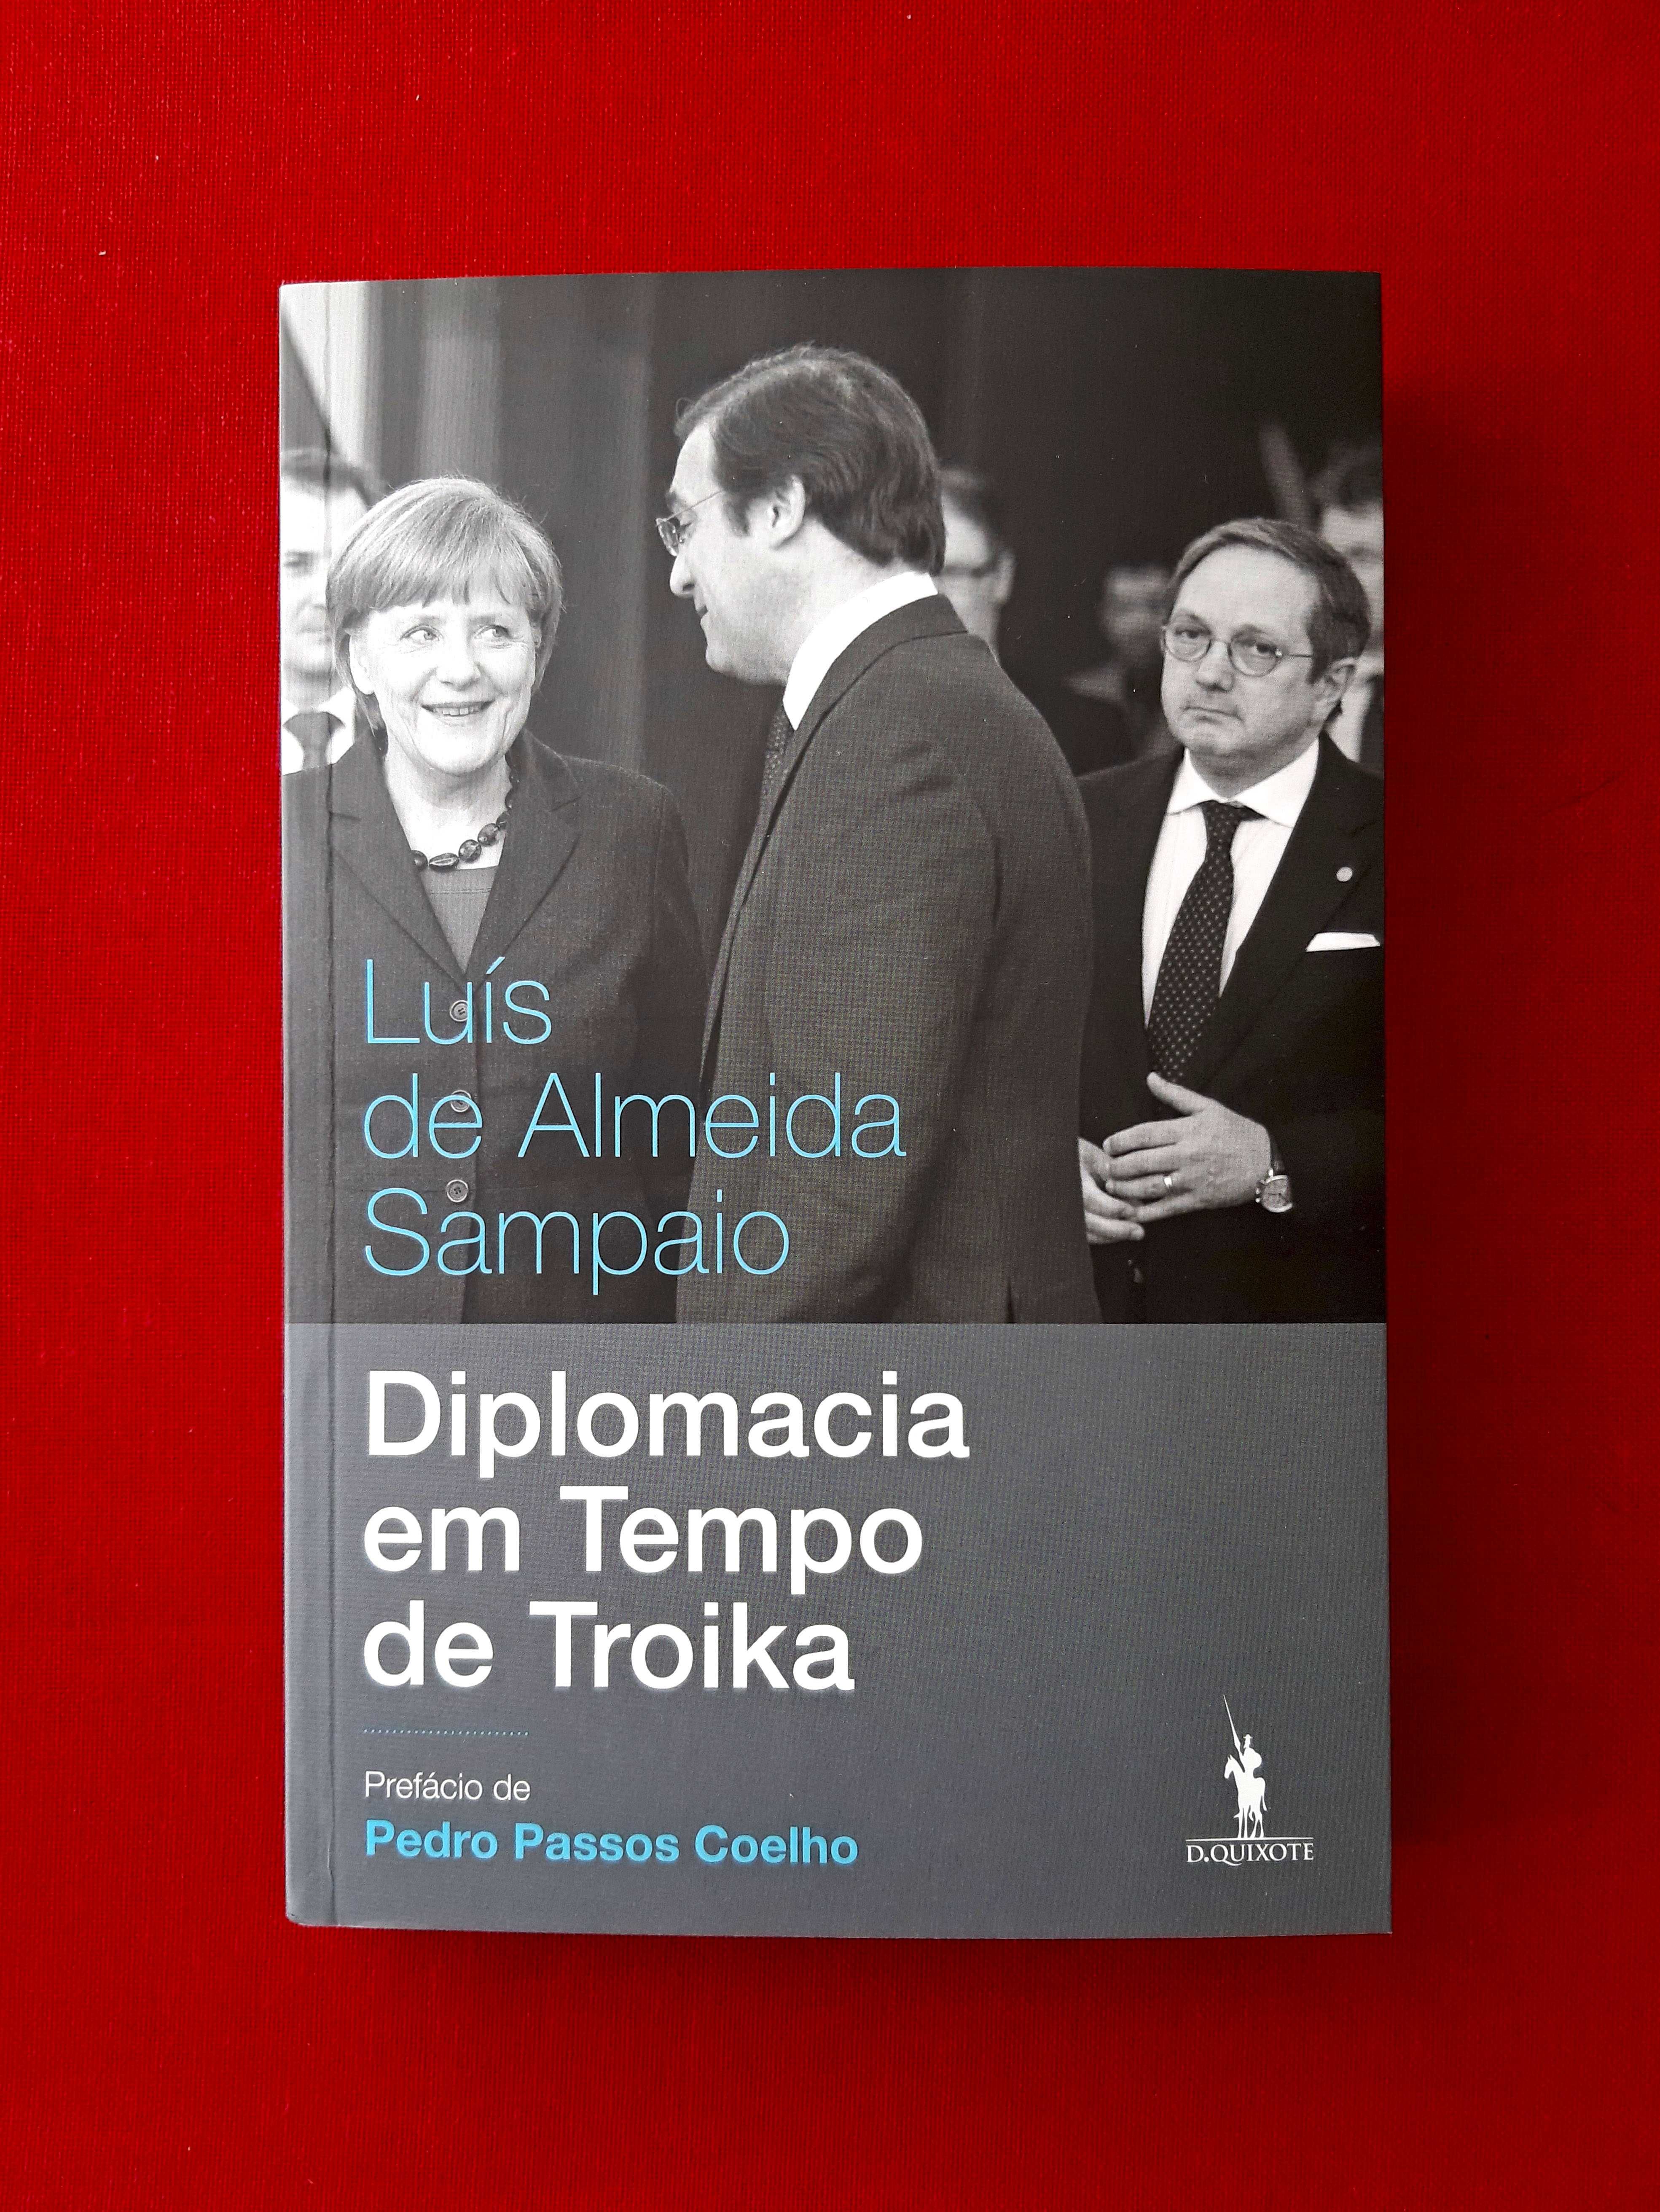 Diplomacia em Tempo de Troika - Luís de Almeida Sampaio